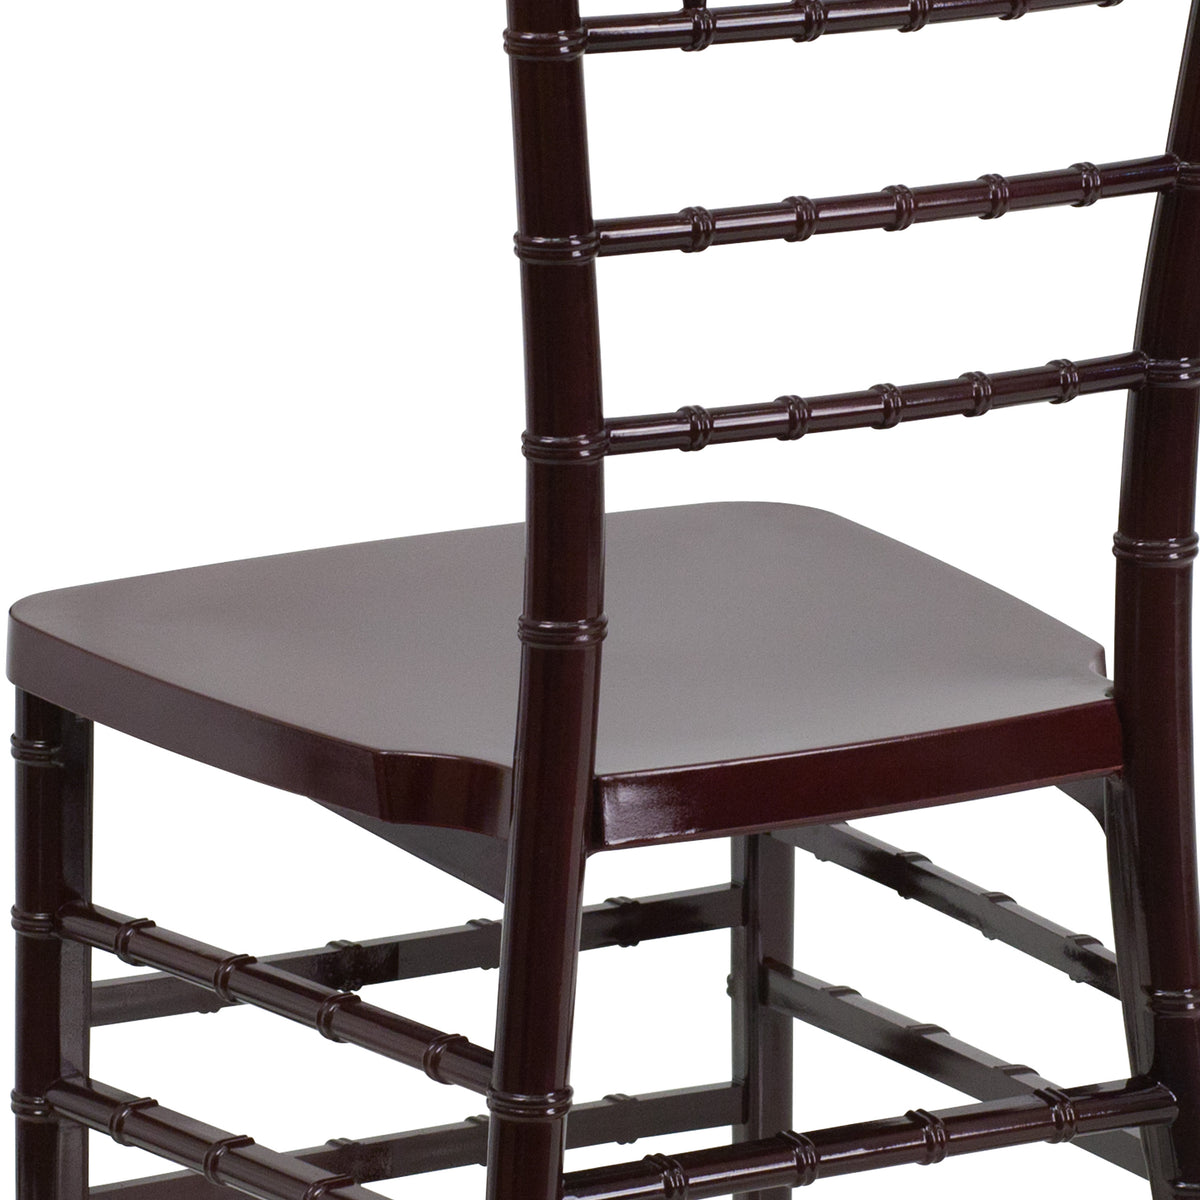 Mahogany |#| Mahogany Resin Stackable Chiavari Chair - Banquet and Event Furniture